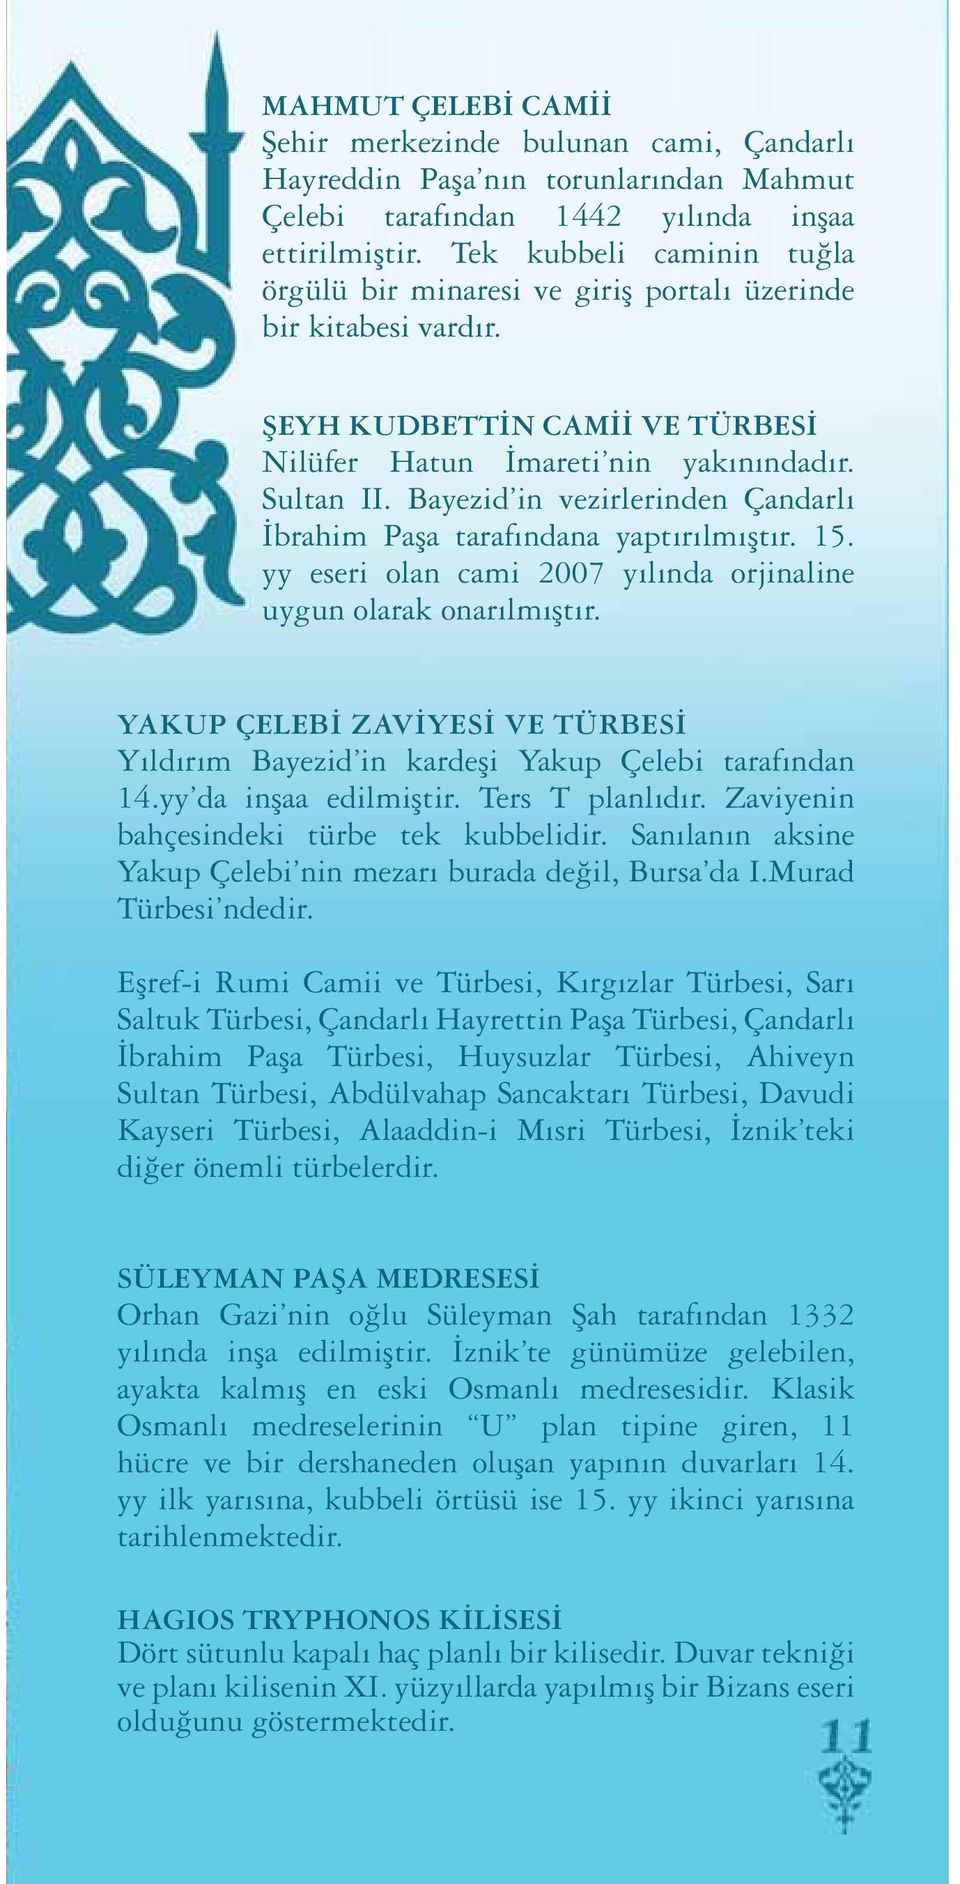 Bayezid in vezirlerinden Çandarlı İbrahim Paşa tarafındana yaptırılmıştır. 15. yy eseri olan cami 2007 yılında orjinaline uygun olarak onarılmıştır.